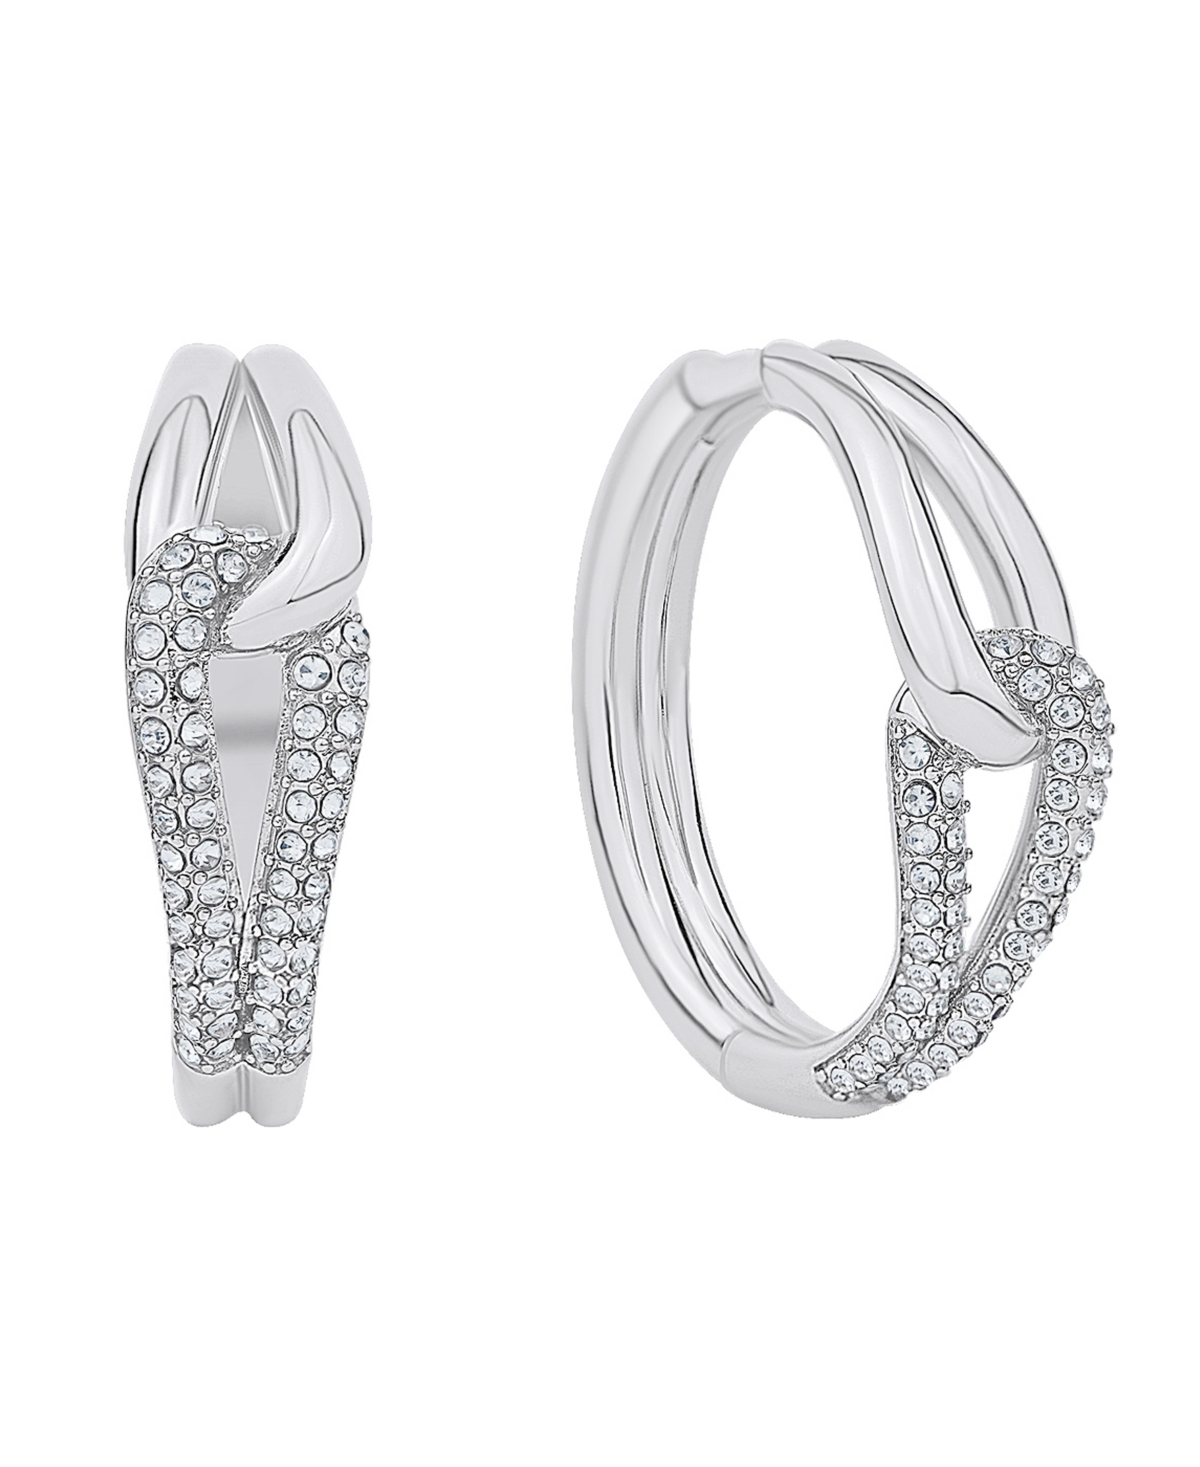 Crystal Knot Hoop Earring - Silver